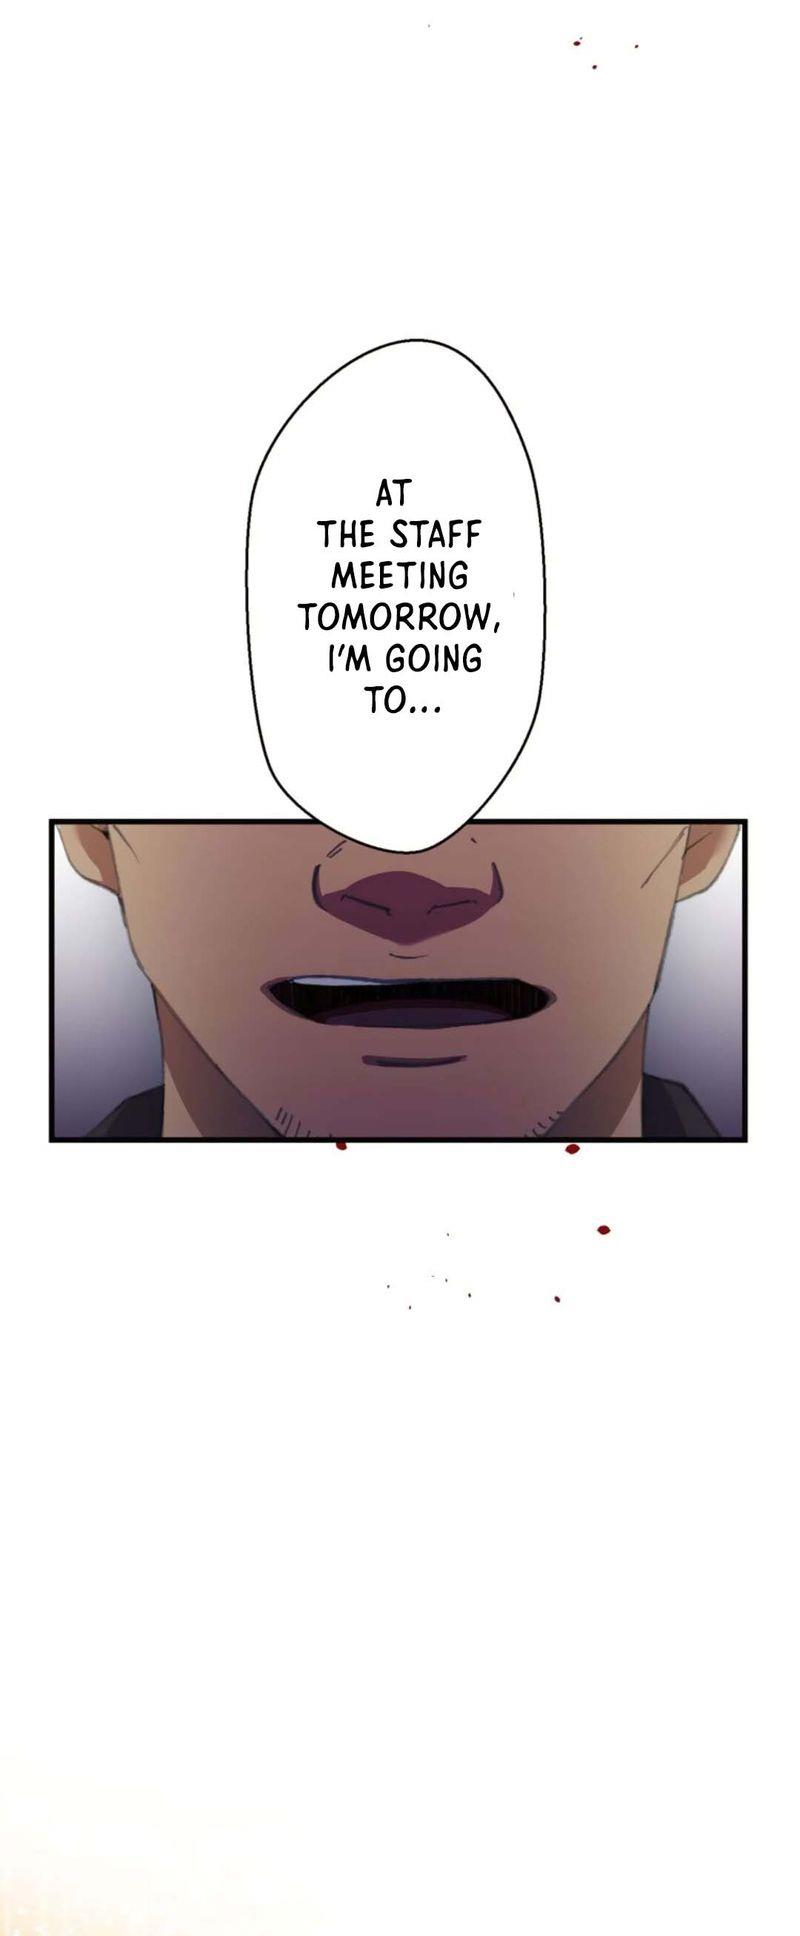 Yakuza Cleaner - Page 2